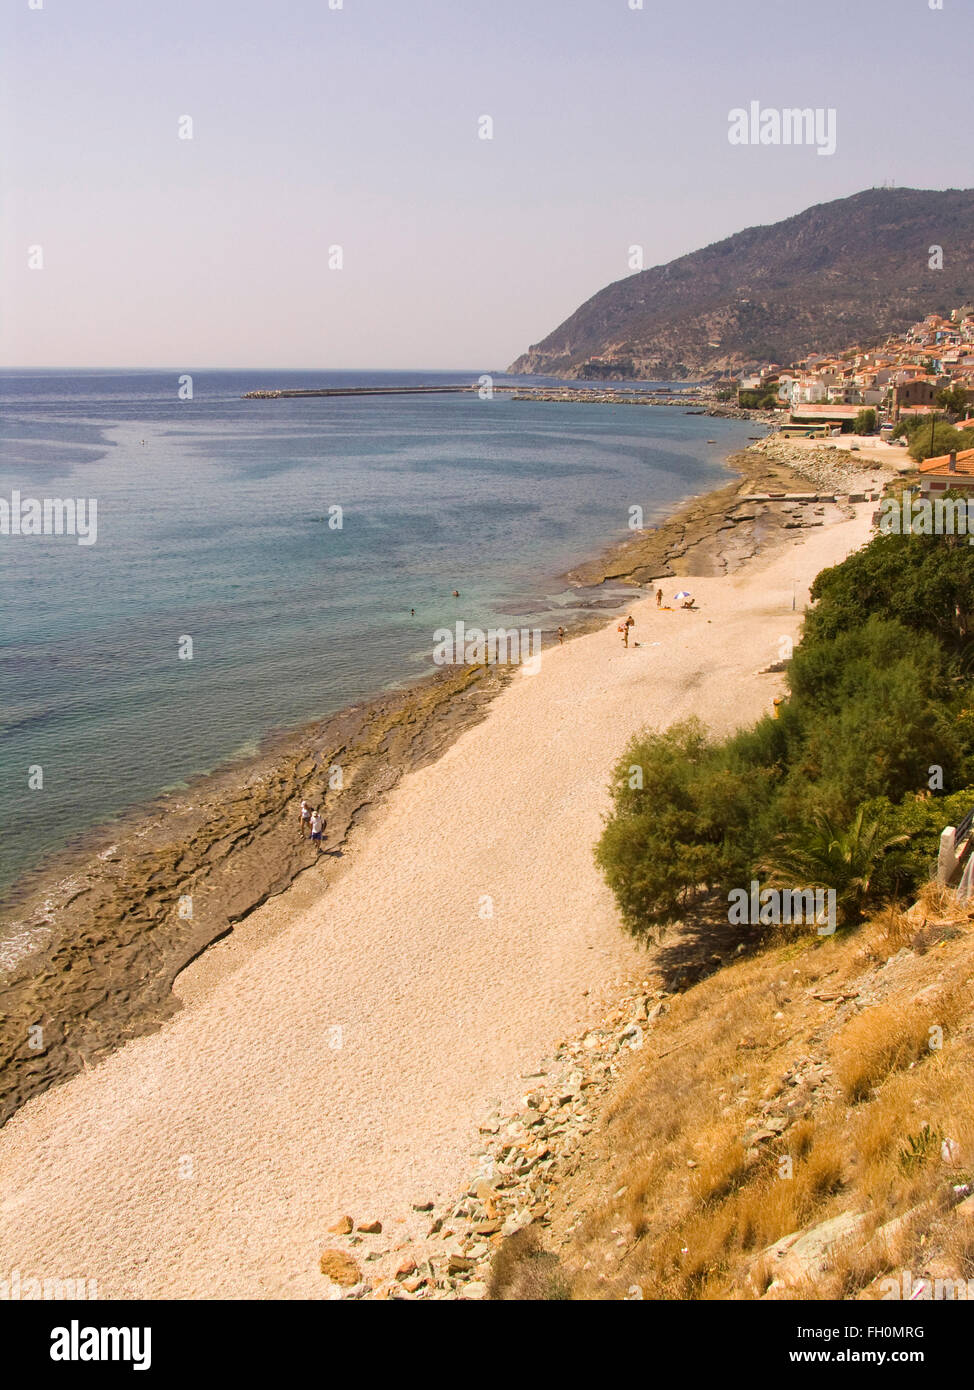 Km 138, l'île de Lesbos, au nord-ouest de la mer Égée, Grèce, Europe Banque D'Images